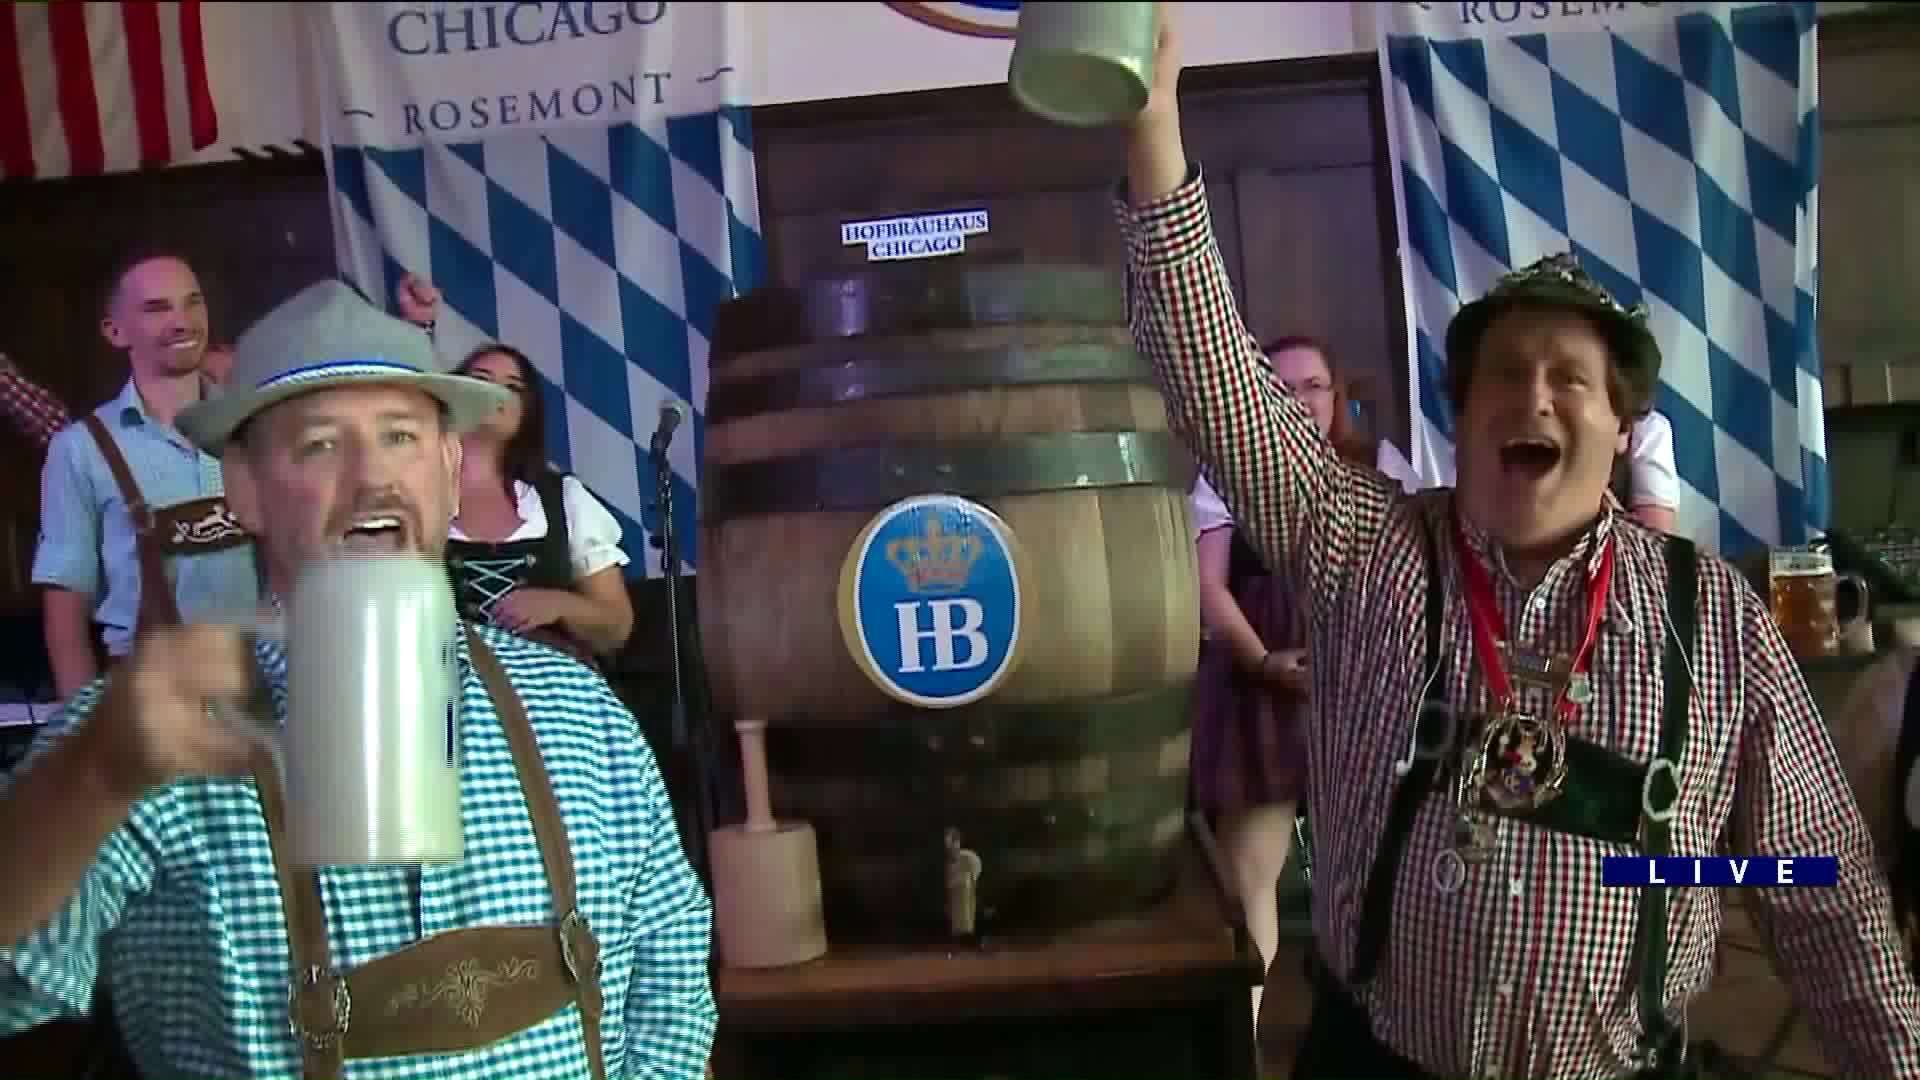 Around Town celebrates Oktoberfest at Hofbrauhaus